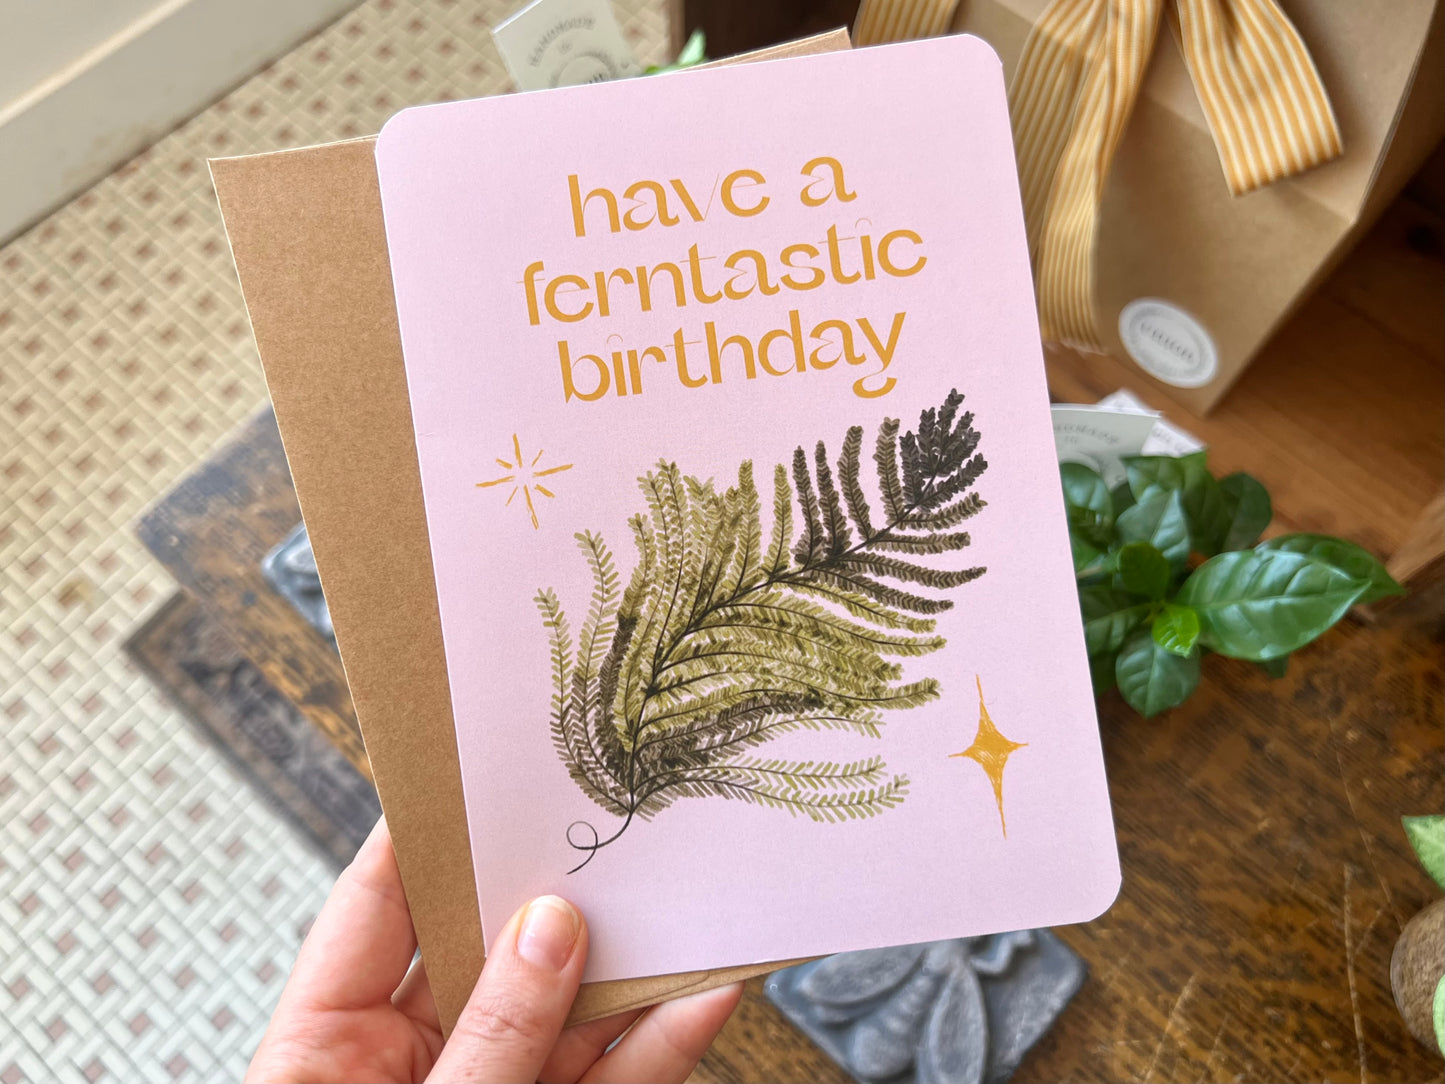 Have A Ferntastic Birthday Card